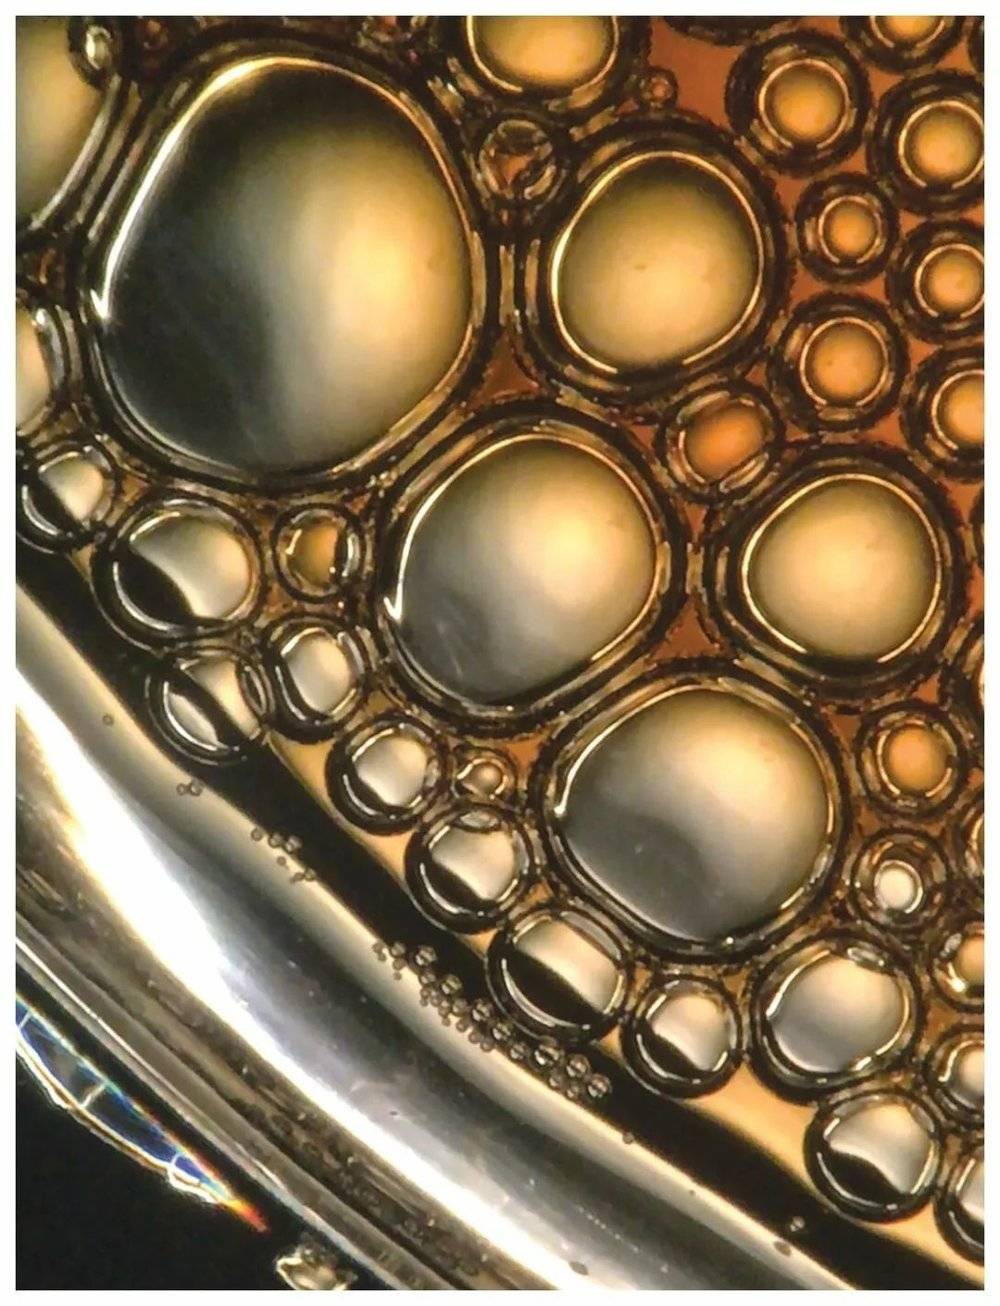 图6. 咖啡泡沫会移动并破裂。这张照片是通过装有智能手机适配器的显微镜拍摄的。由菲利斯·弗兰克尔提供。<br>